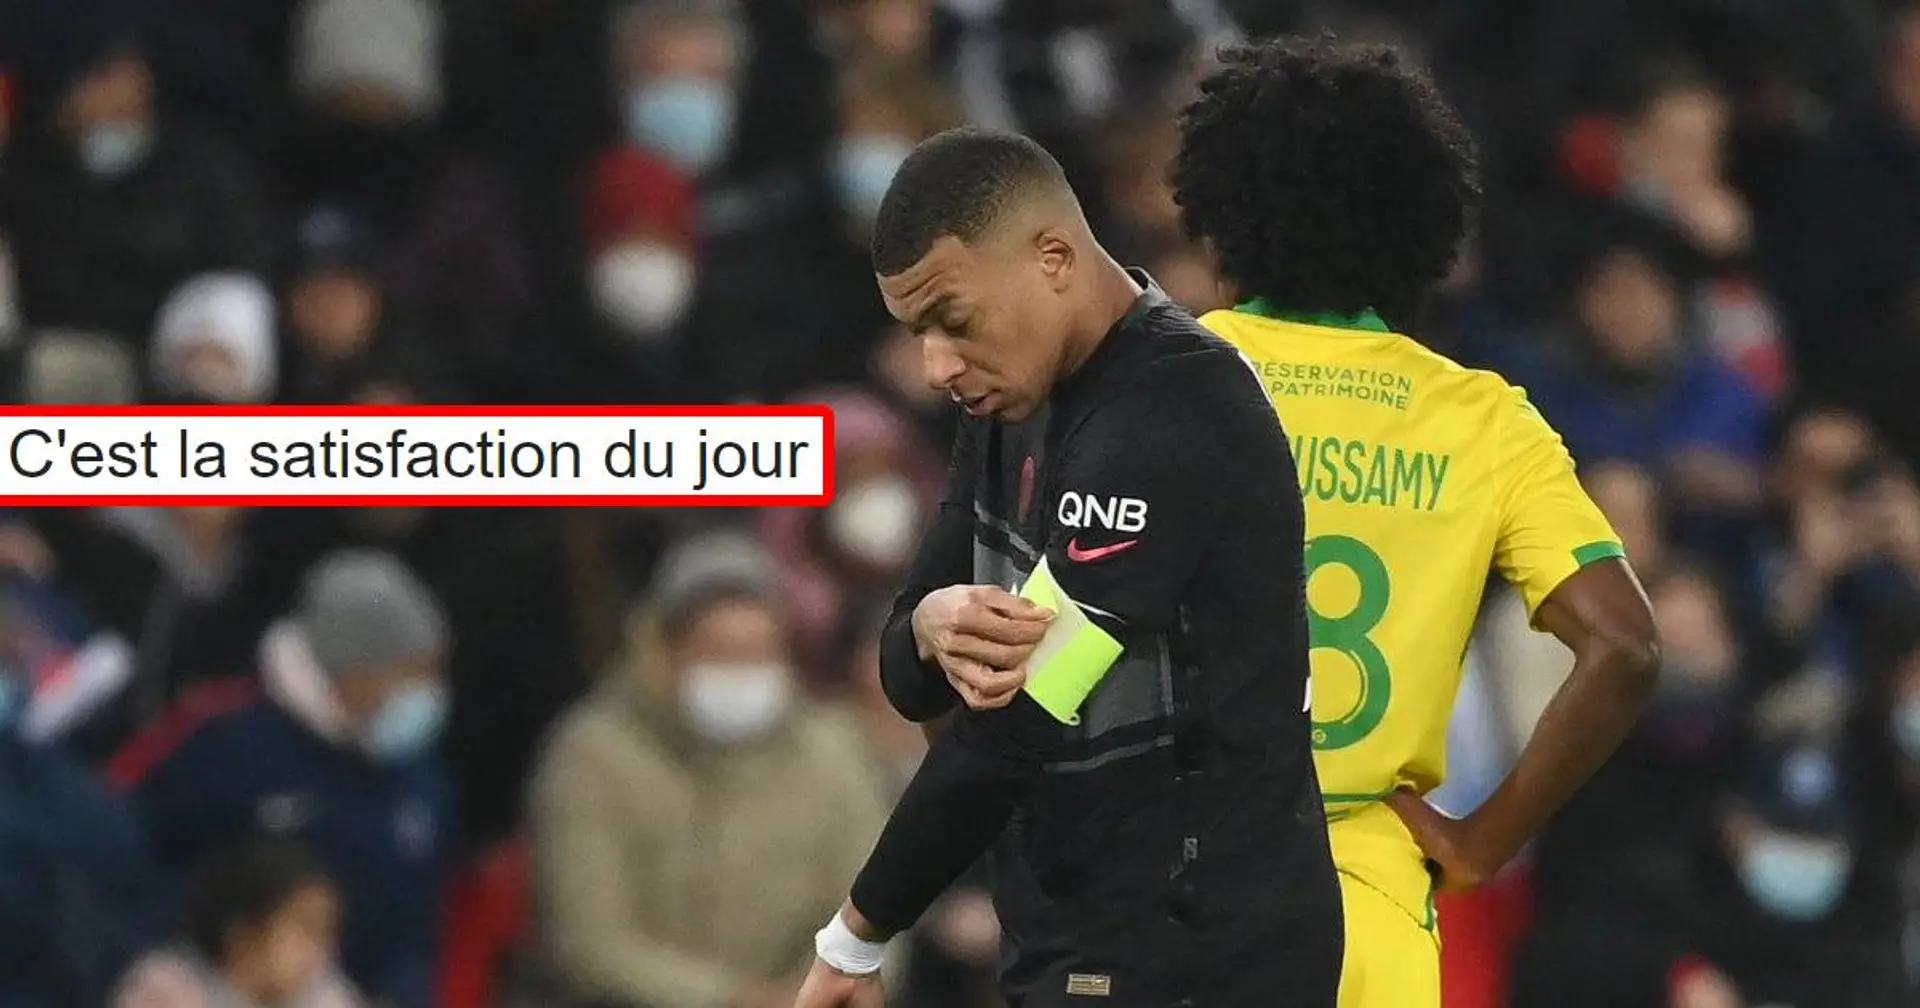 "Alors tu signes?", les fans du PSG réagissent au moment symbolique de voir Mbappé porter le brassard de capitaine